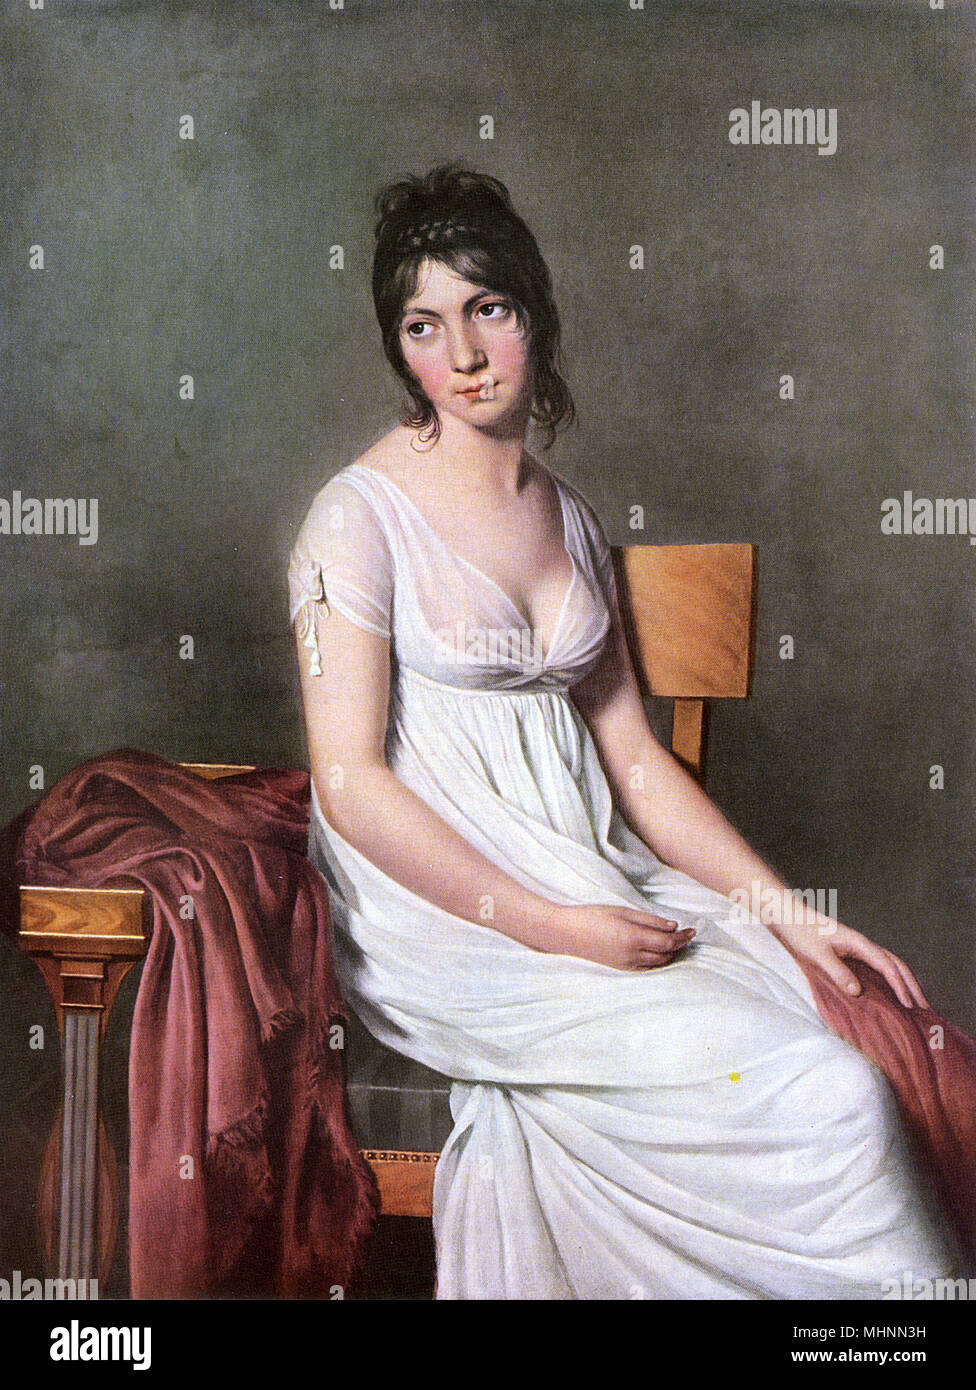 Madame Hamelin par Jacques-Louis David (1748-1825) - peinture sur toile. Le sujet, Madame Hamelin, un créole né à Saint-Domingue. Elle devint la femme d'un banquier parisien, et a joué un rôle brillant dans la société parisienne de la période du Directoire. Elle a été surnommé "La Jolie laide". Chateaubriand, qu'elle séduit, dit d'elle qu'elle possédait les deux qualités qui caractérisent également la France, de la noblesse et de frivolité. Date : vers 1800 Banque D'Images